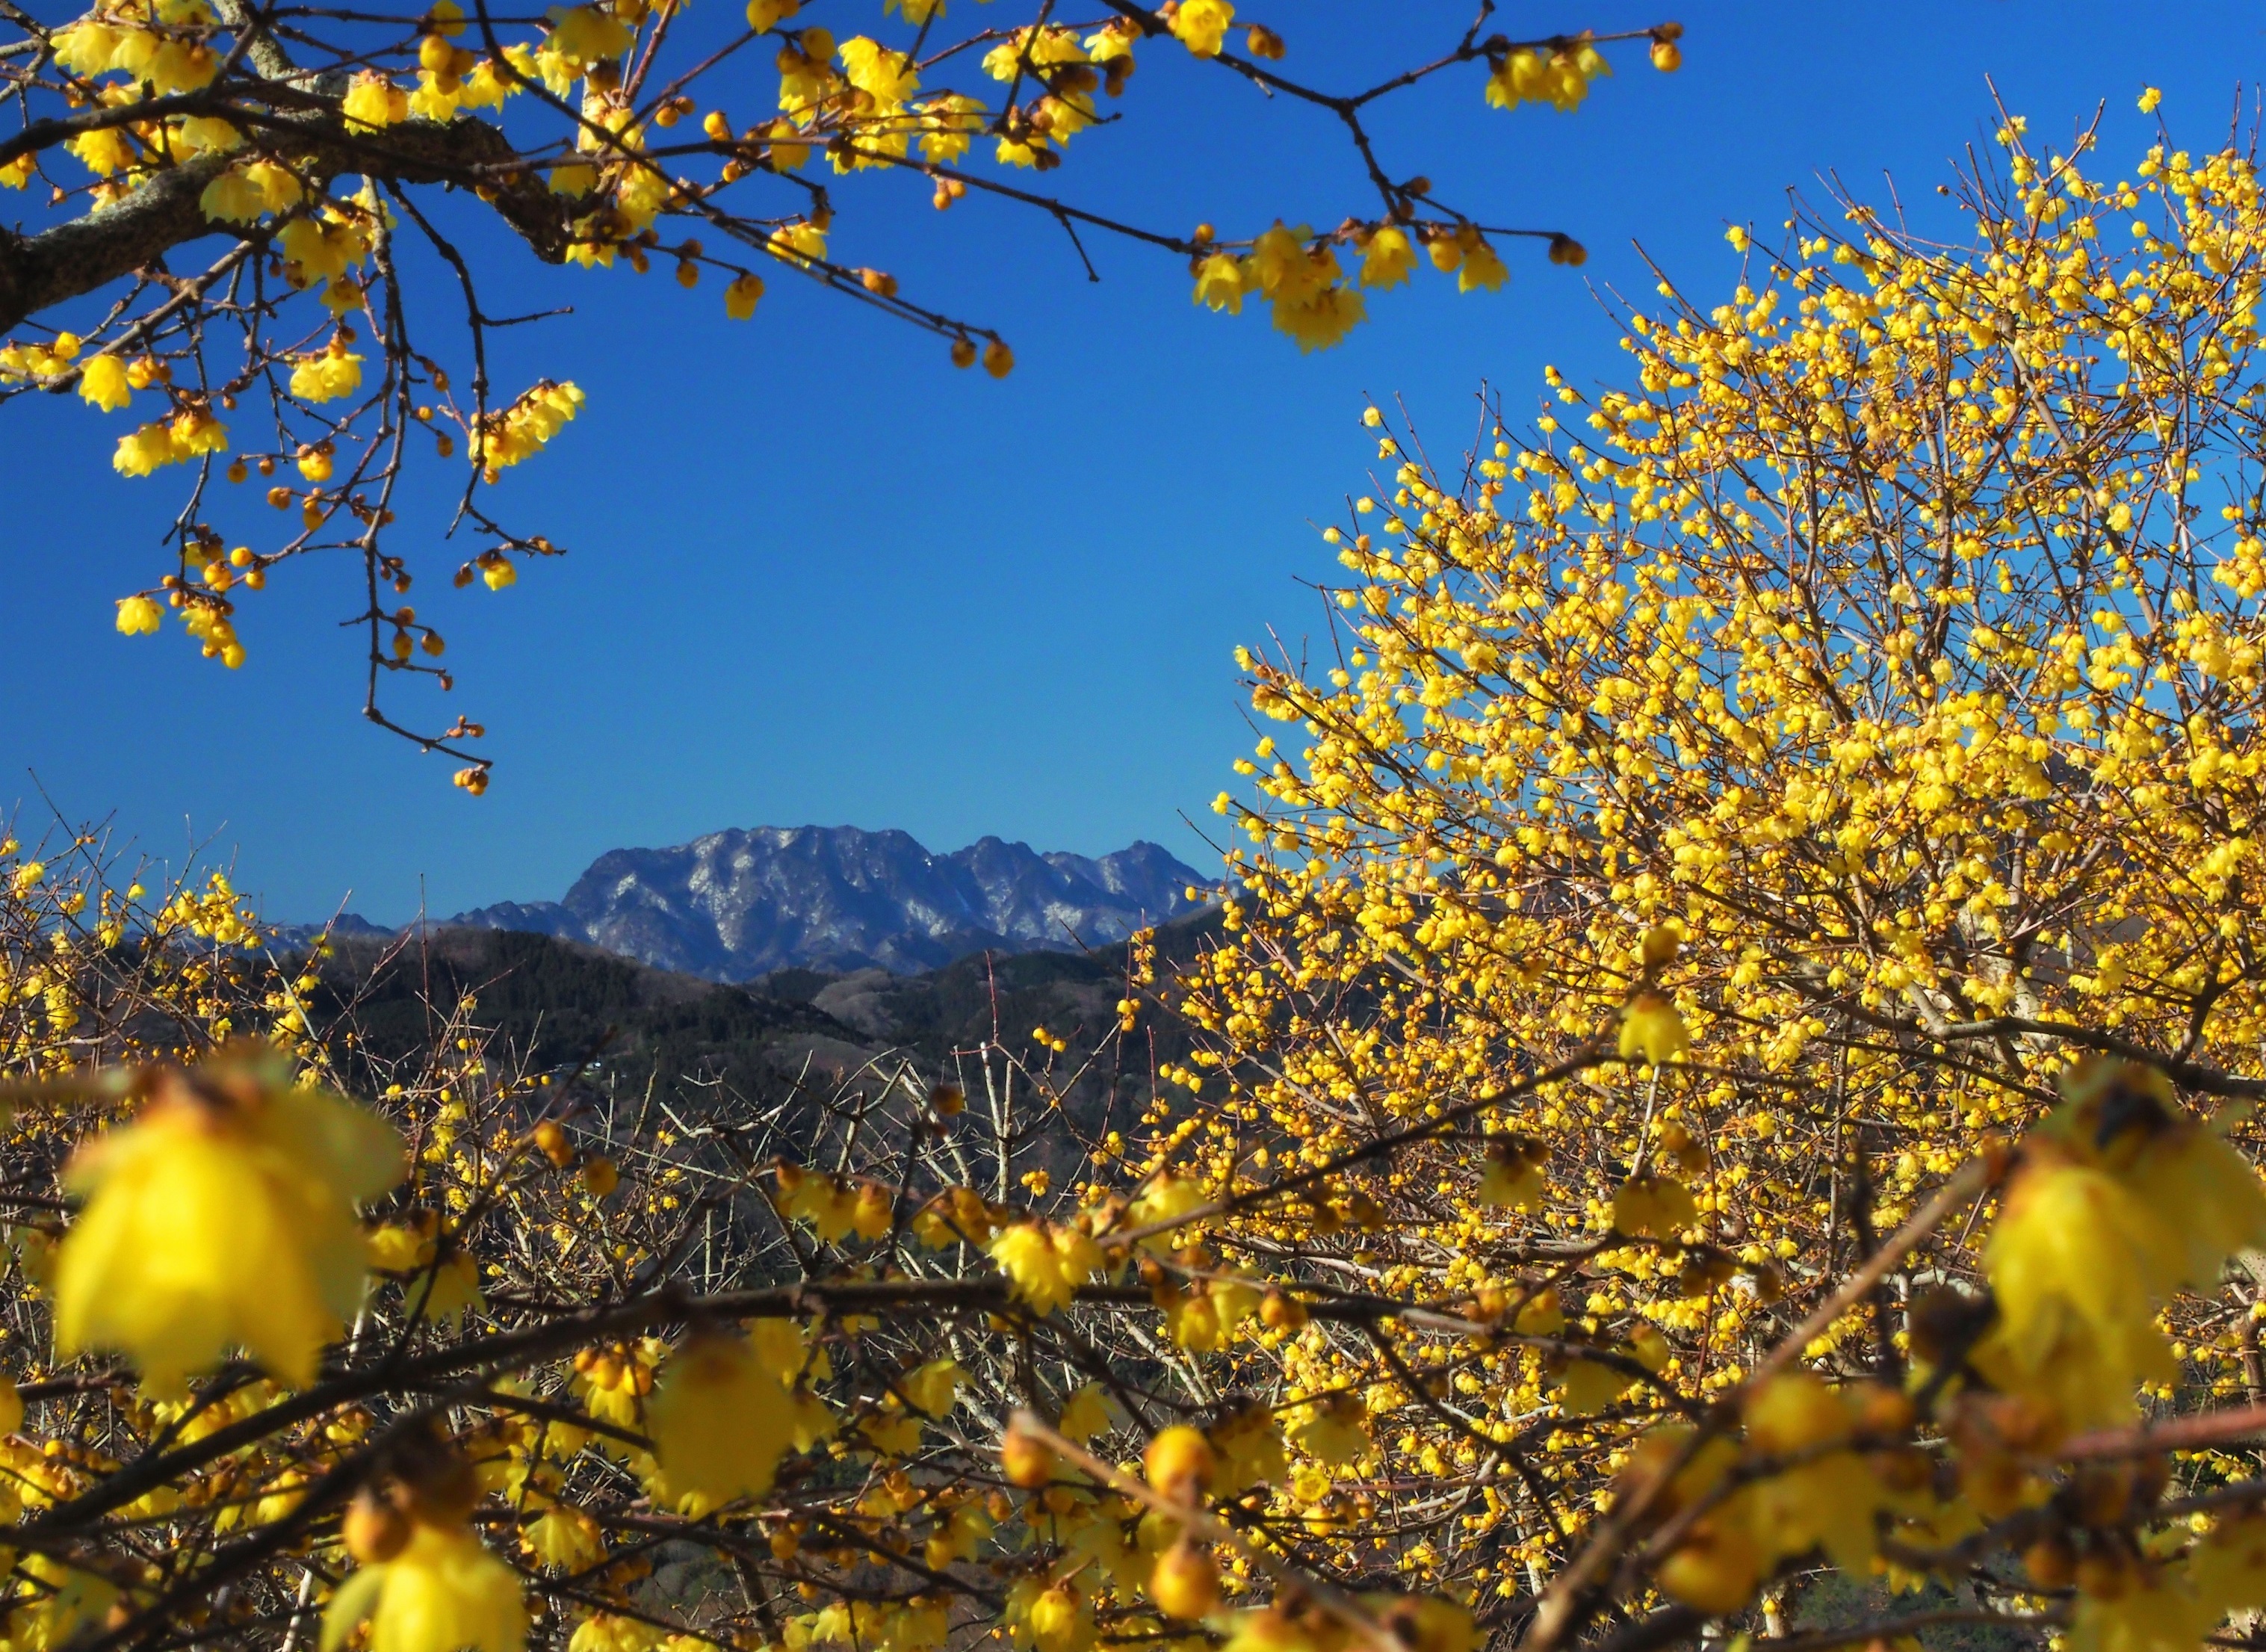 関東一のロケーション　宝登山の臘梅(ロウバイ)が開花　
期間限定でライトアップやハイキング等を実施